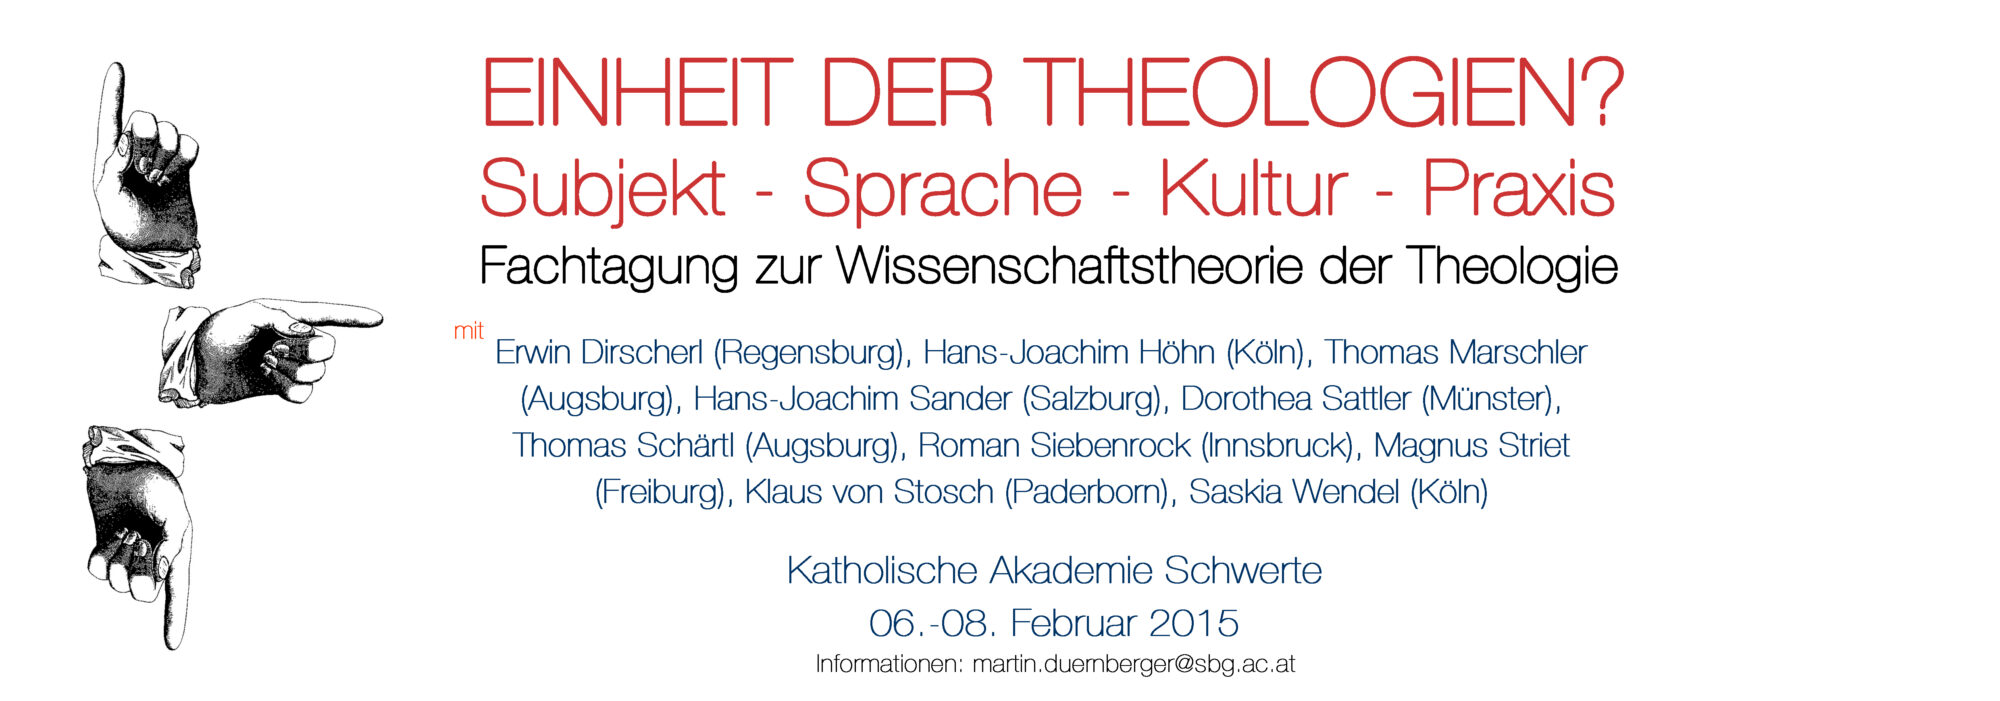 Banner der Tagung Einheit der Theologien